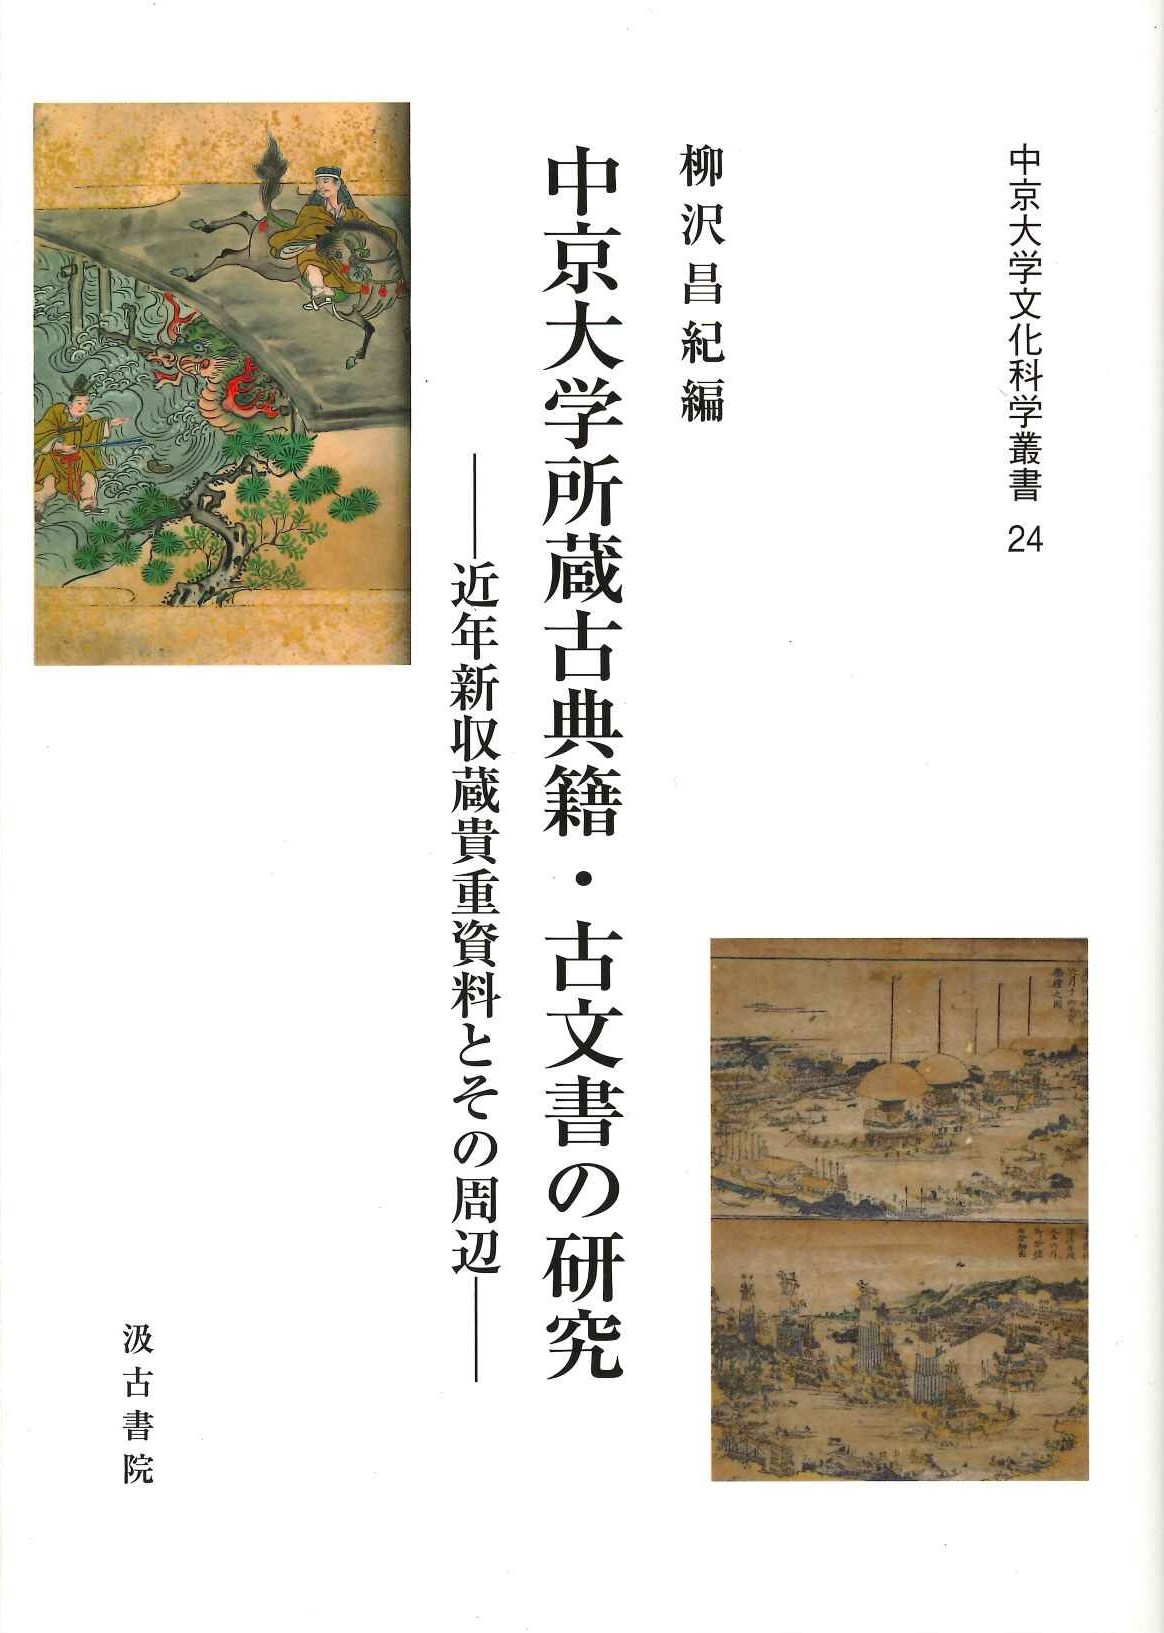 中京大学所蔵古典籍・古文書の研究 近年新収蔵貴重資料とその周辺